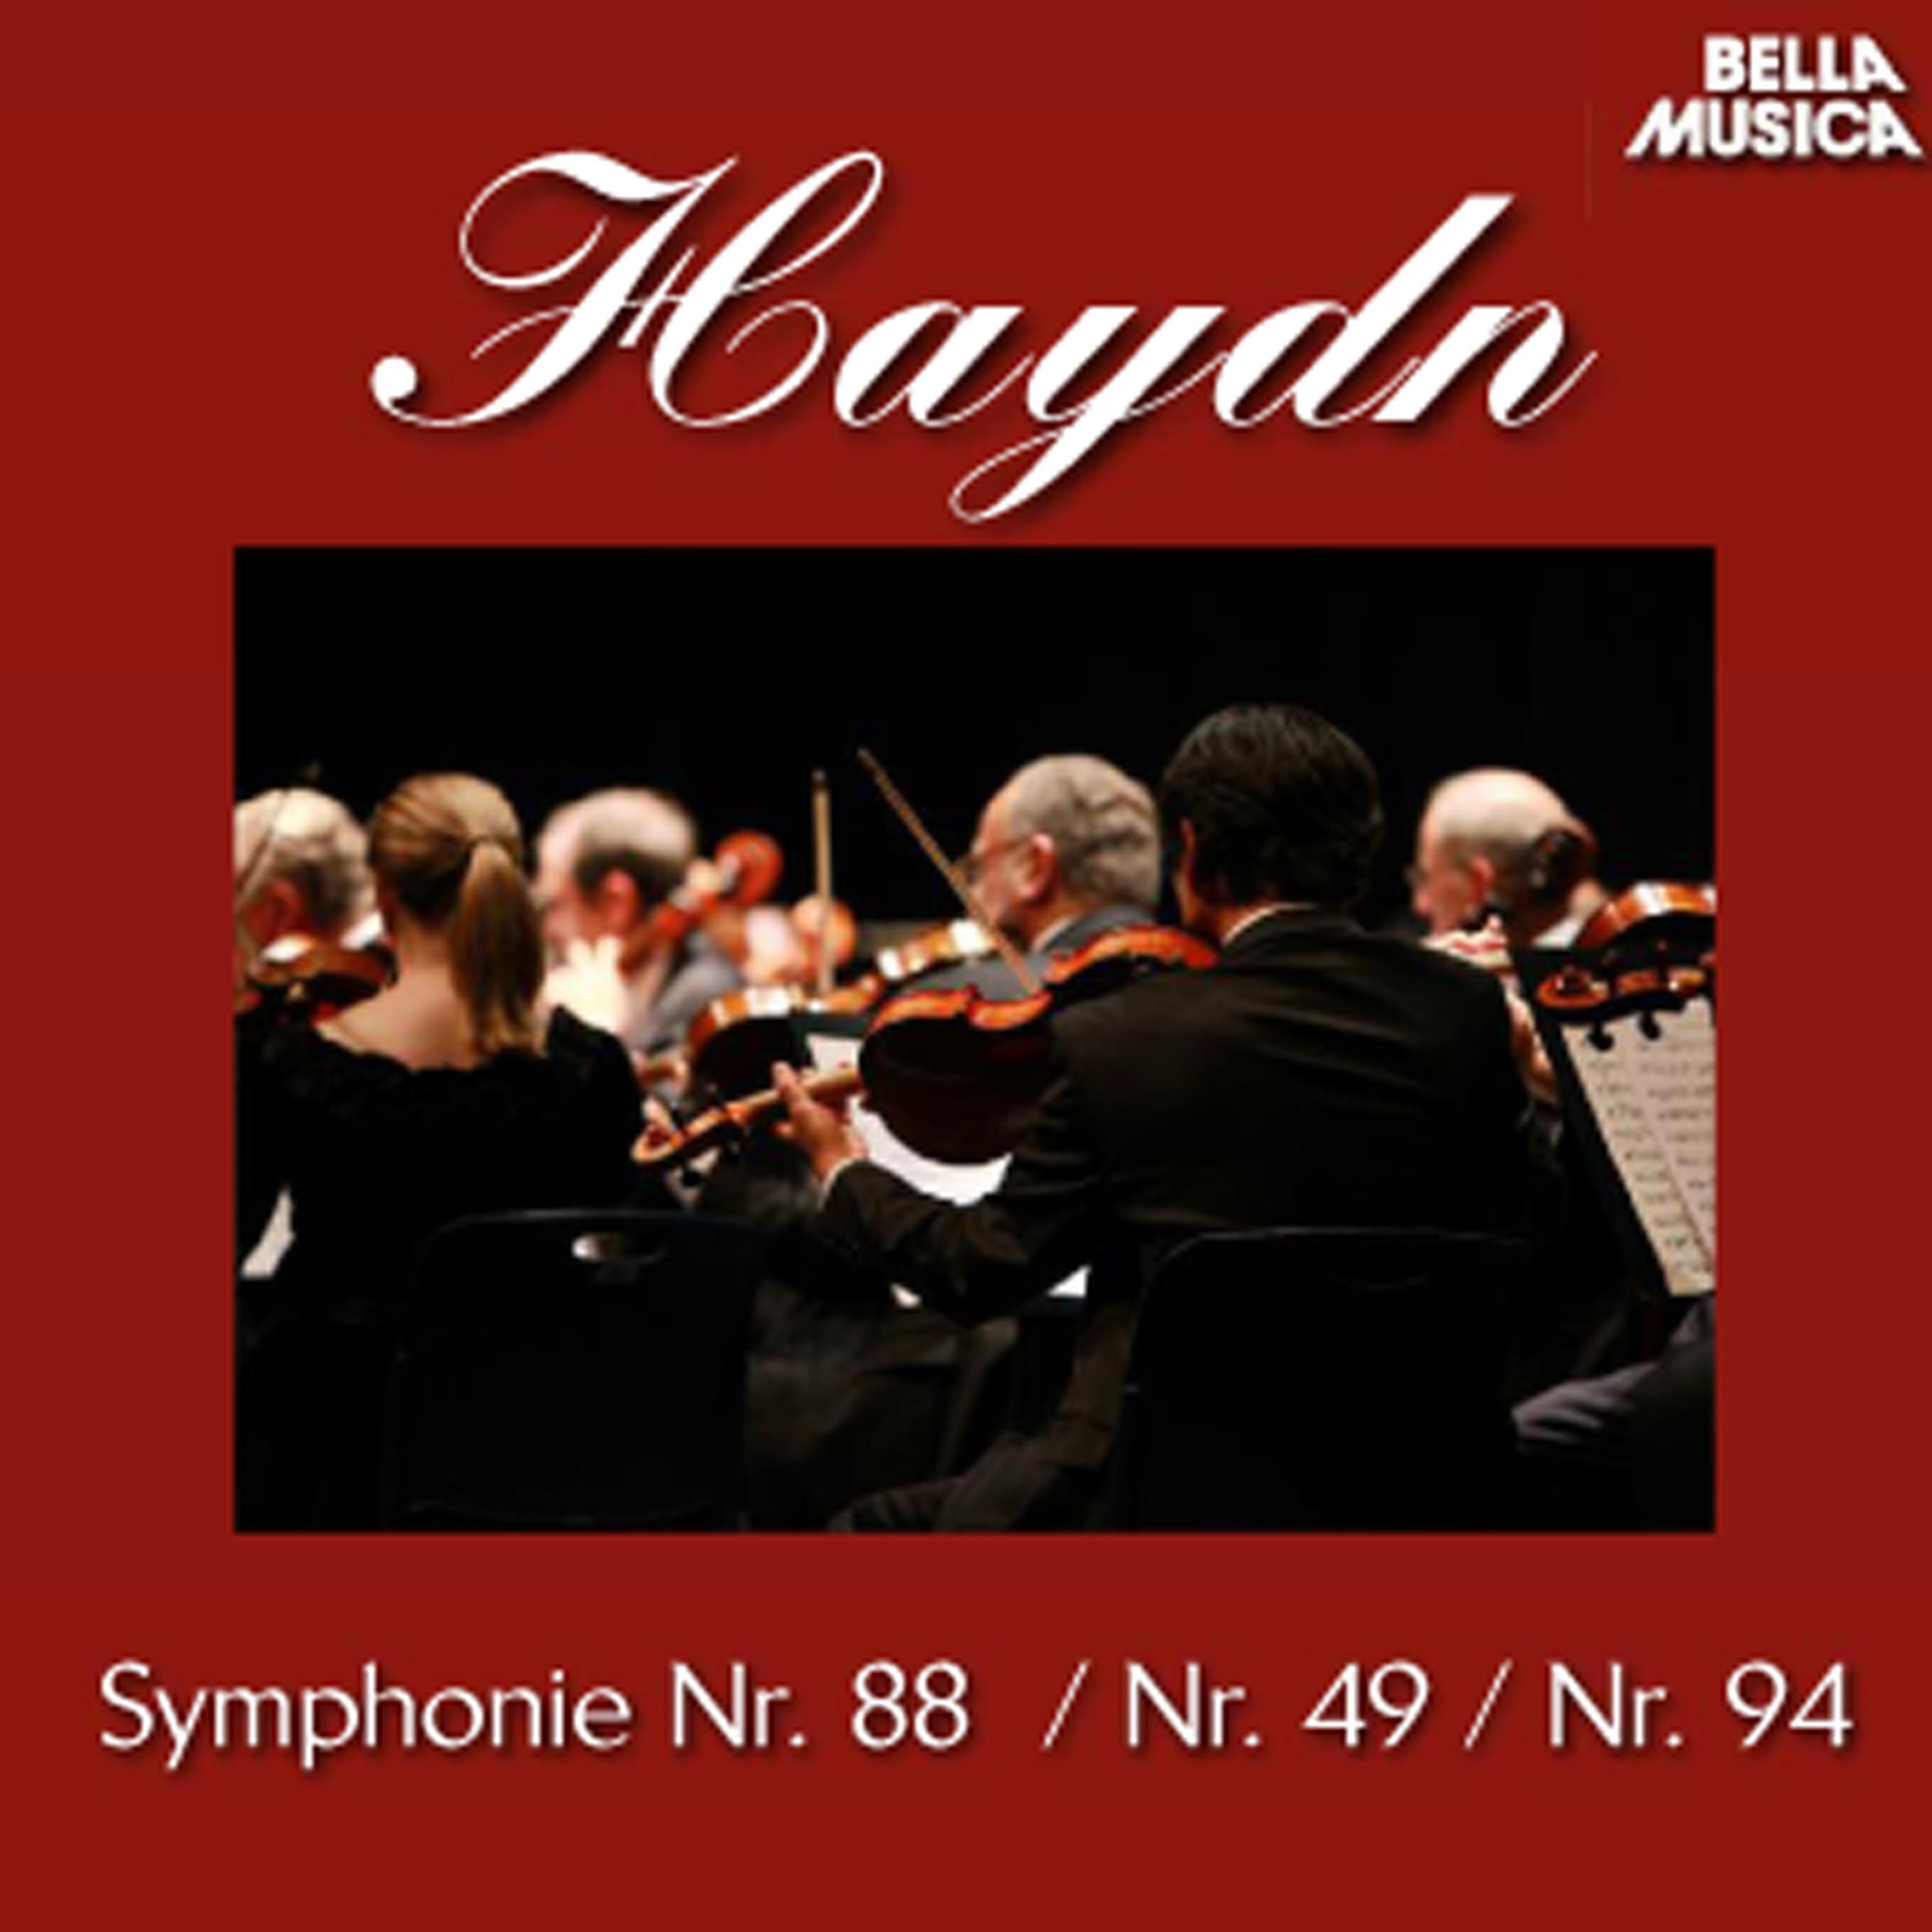 Sinfonie No. 88 fü r Orchester in G Major: I. Adagio  Allegro